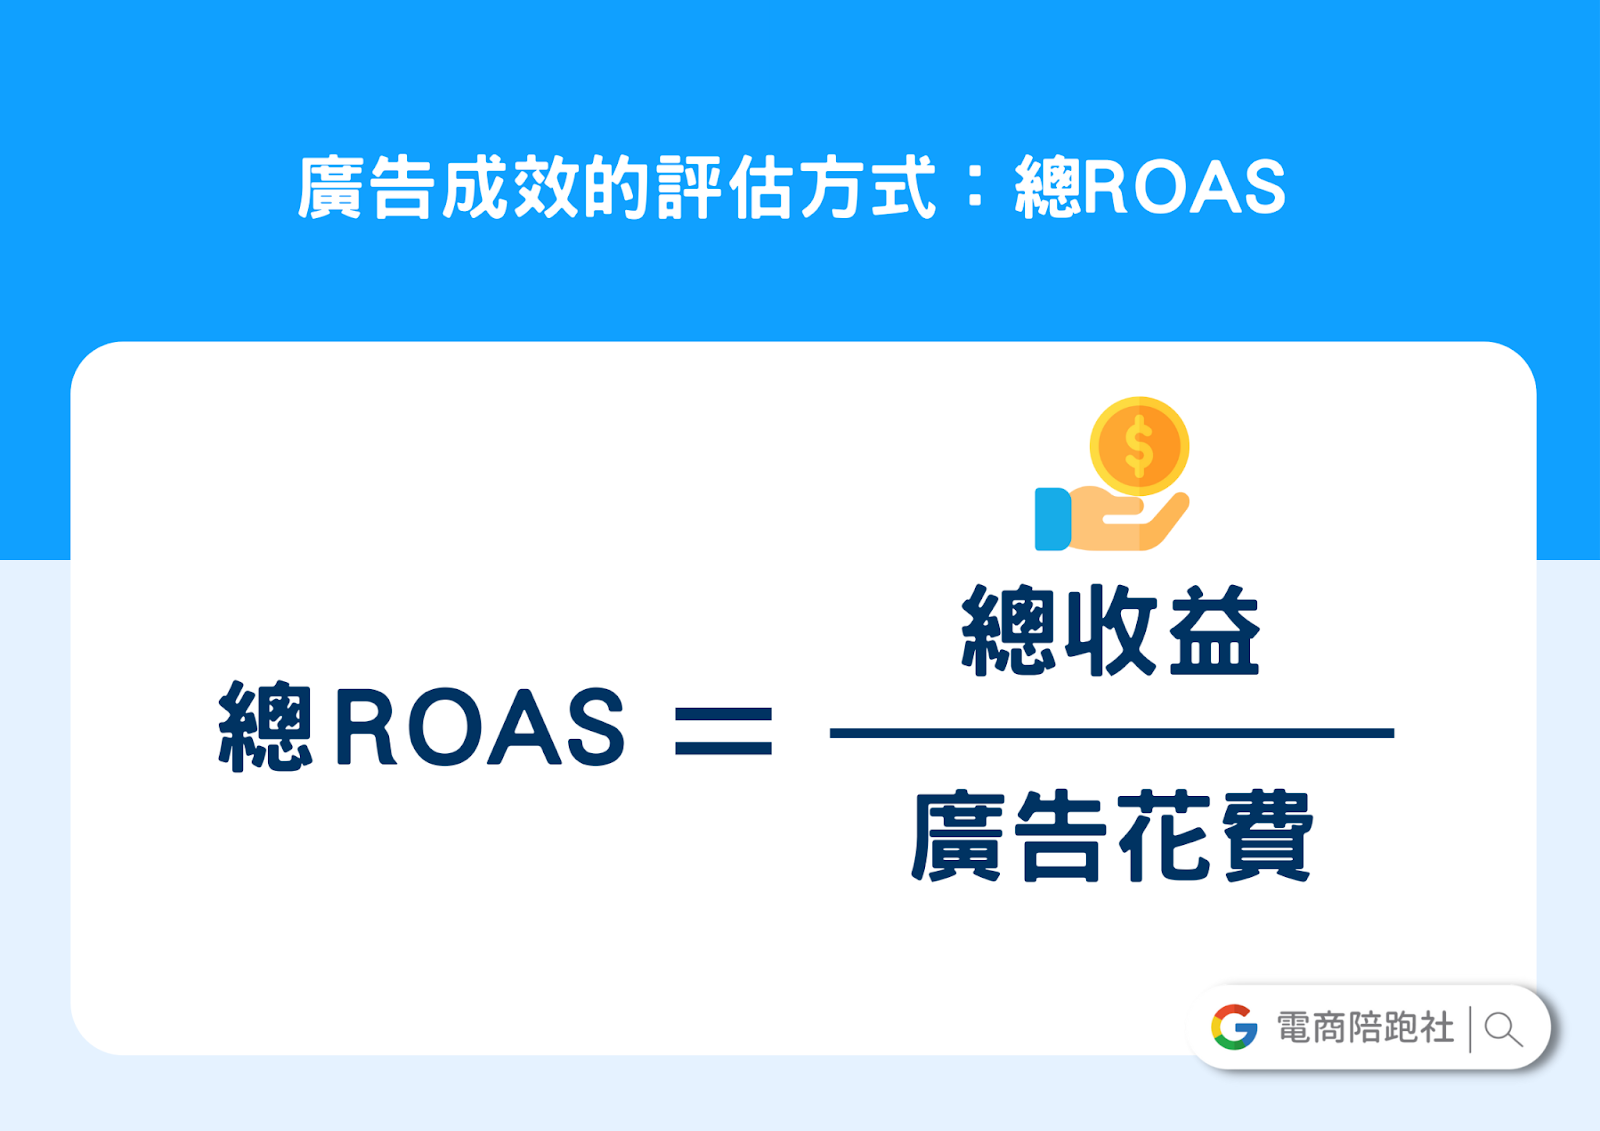 廣告成效評估方式-總 ROAS